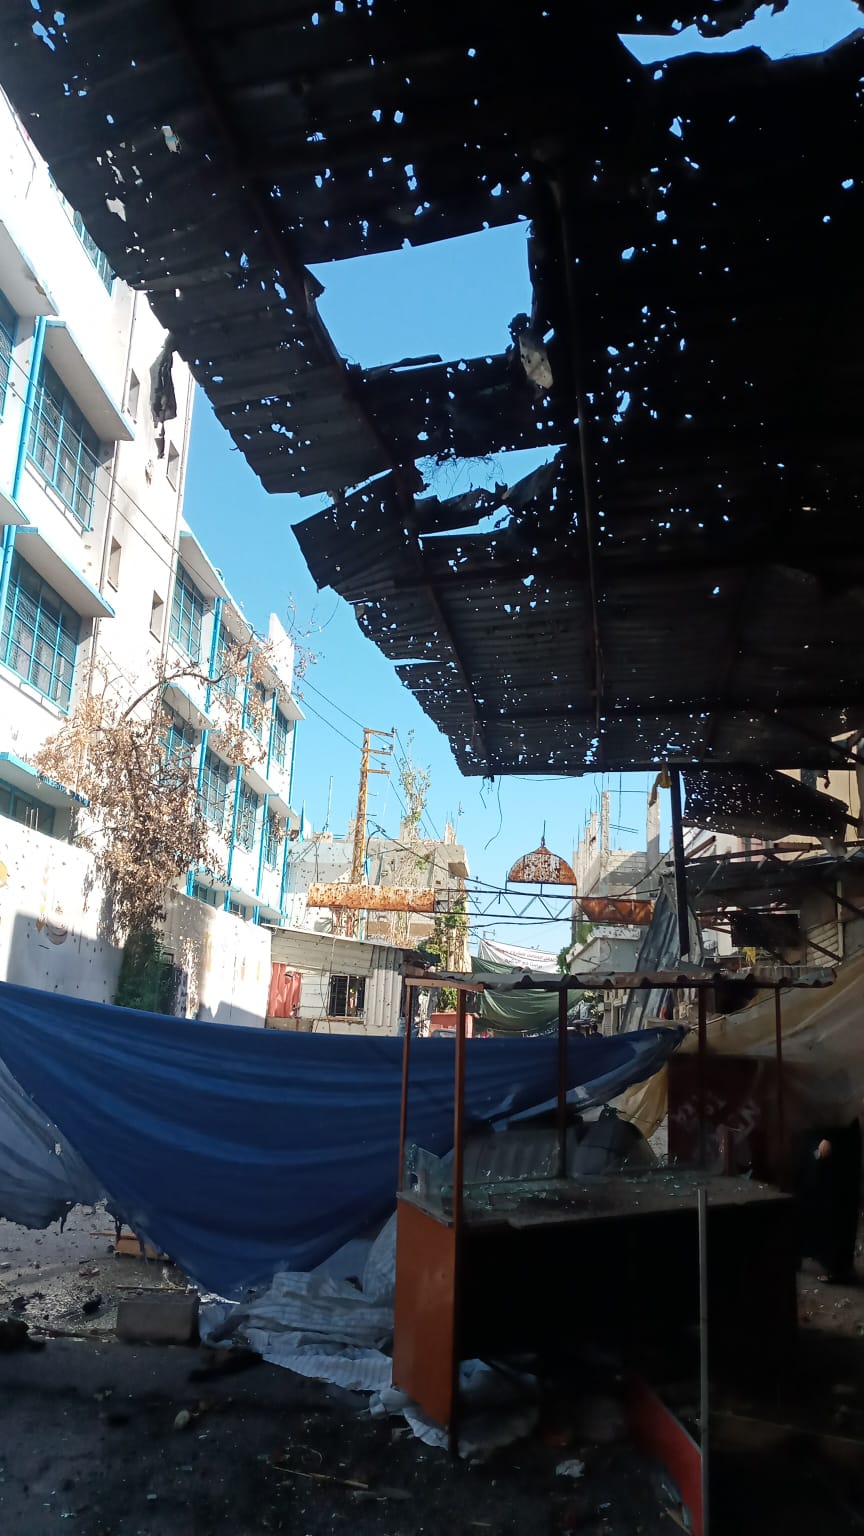 بالفيديو والصور: جولة في شارع  حي الصفصاف داخل مخيم عين الحلوة صباح هذا اليوم